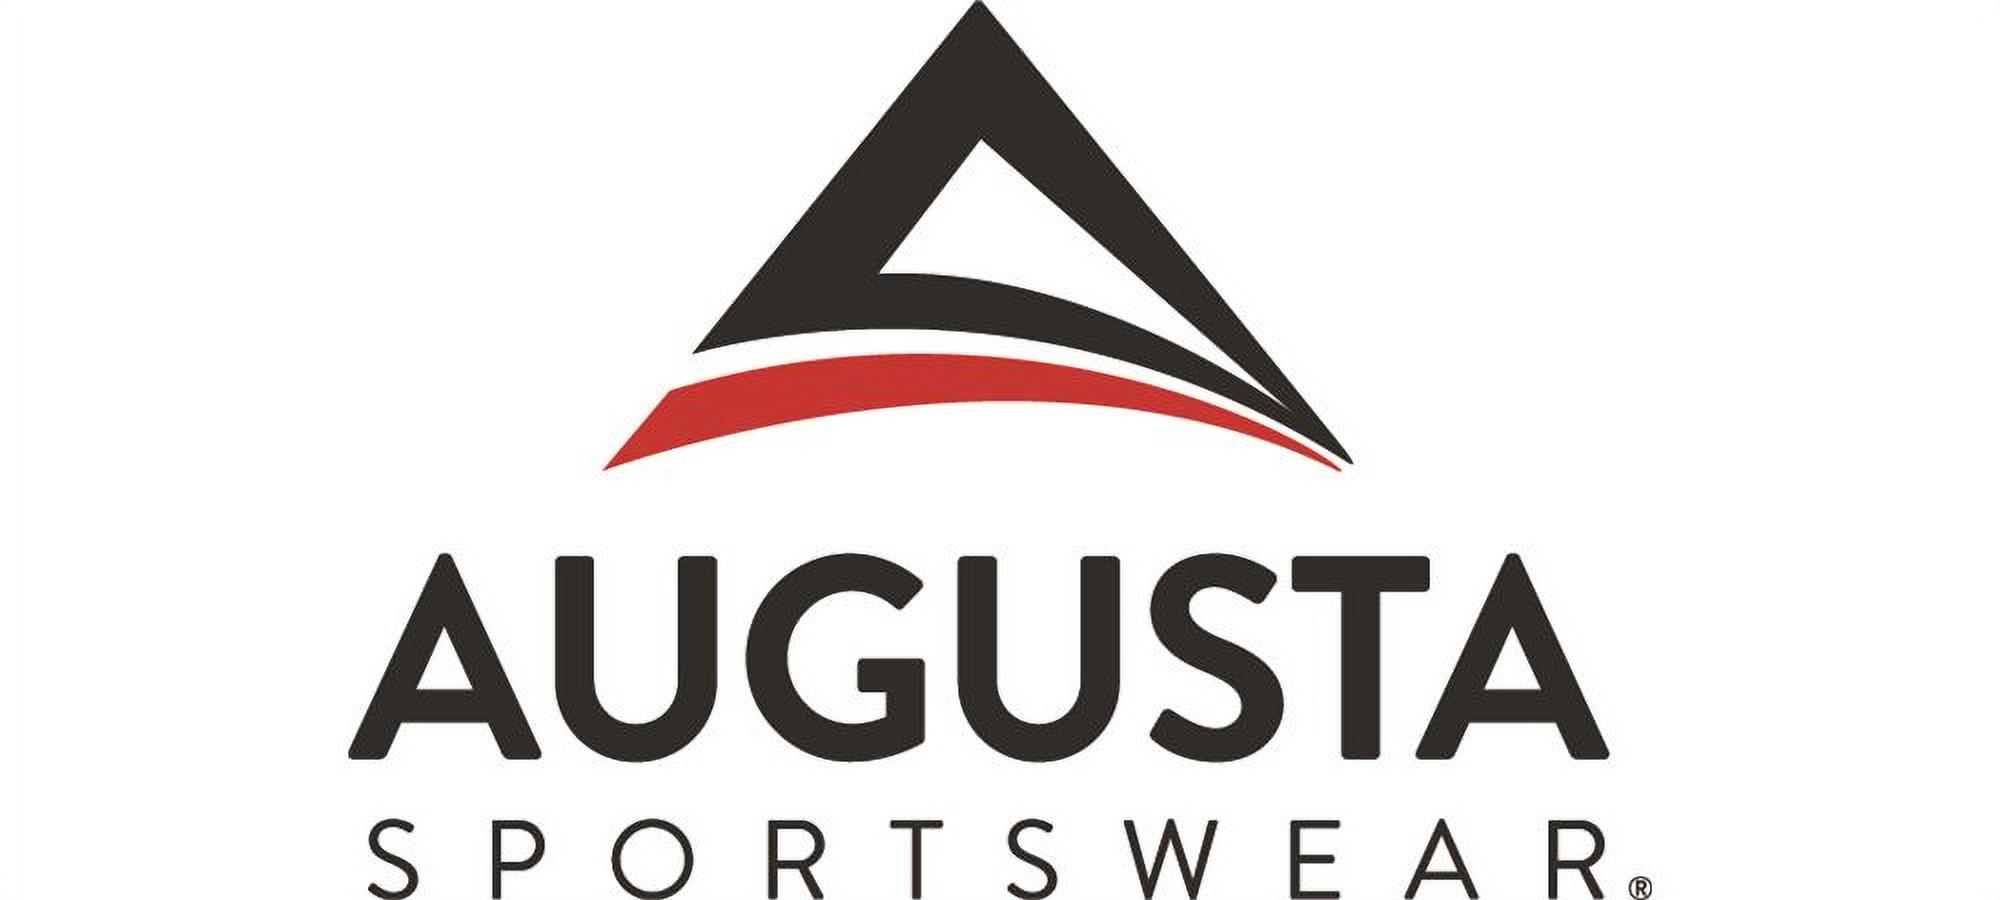 Augusta Sportswear Boy's Scrambler Jersey, Black, Small Retired - image 2 of 2